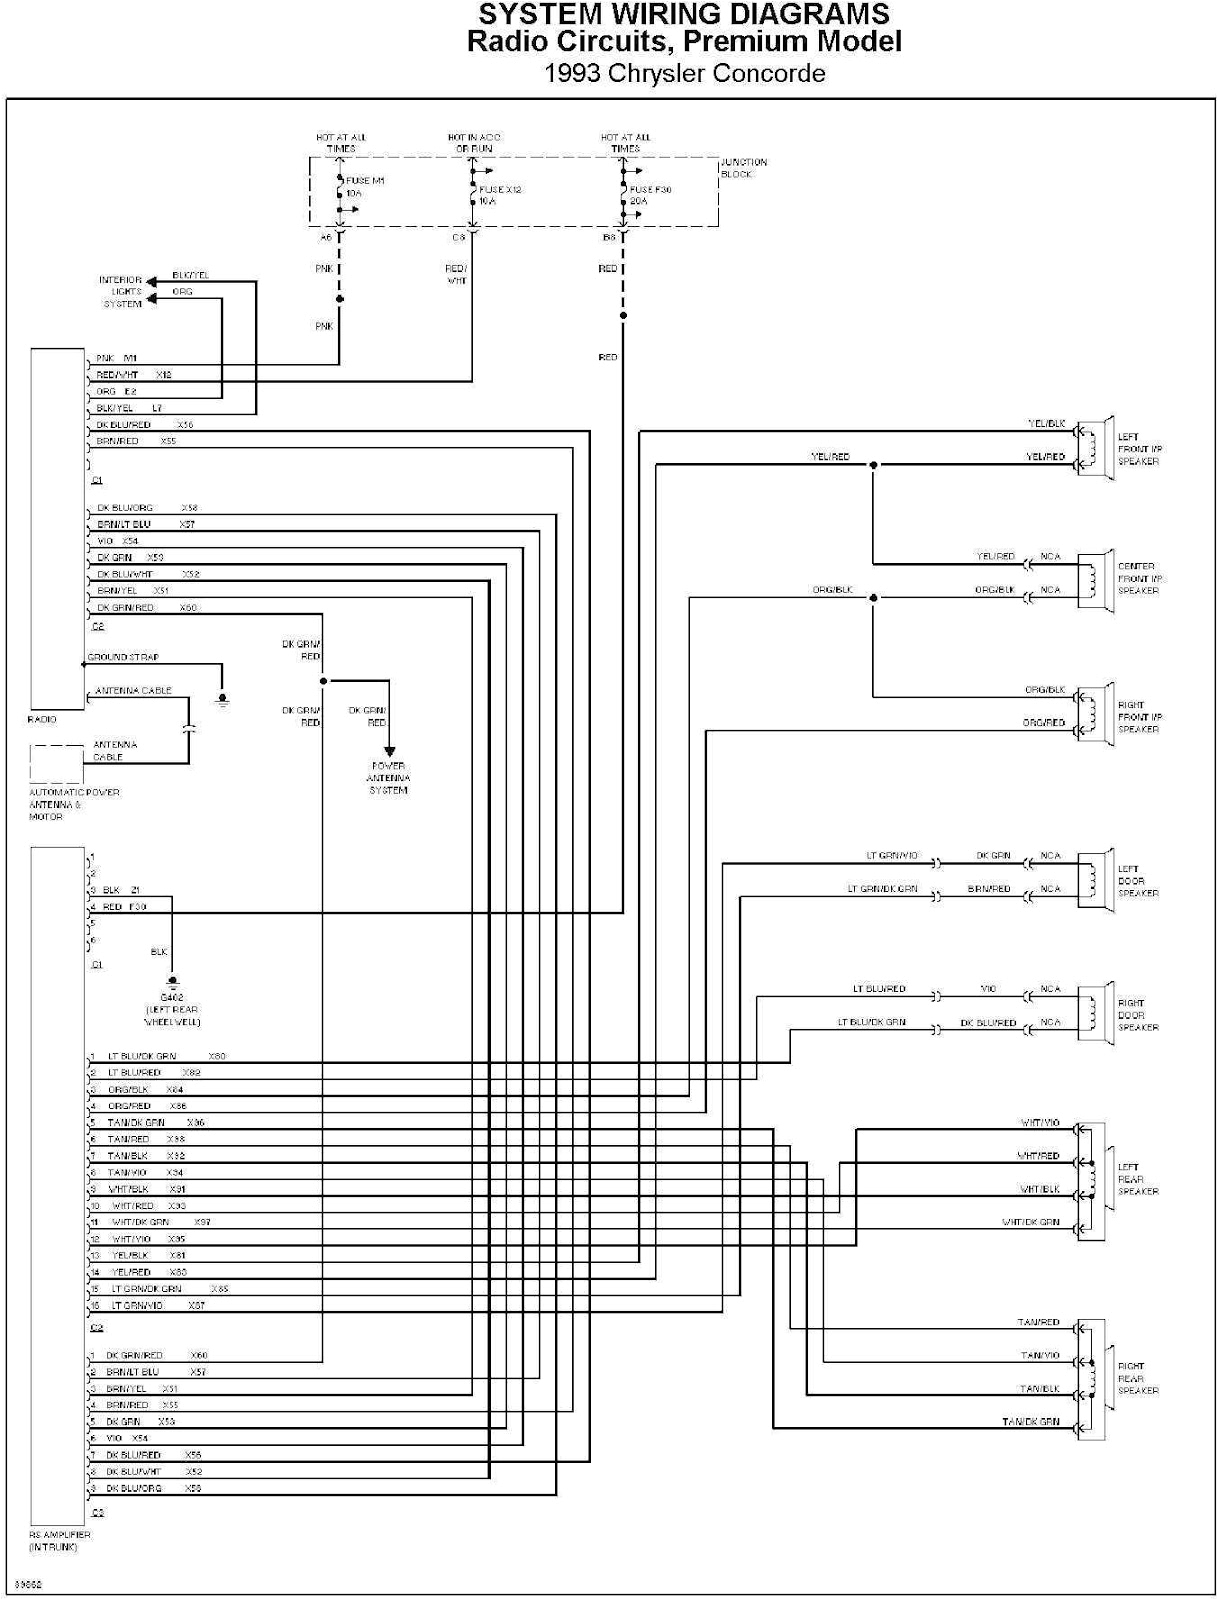 chrysler 300c stereo wiring diagram wiring diagram databasechrysler concorde radio circuit system wiring diagram